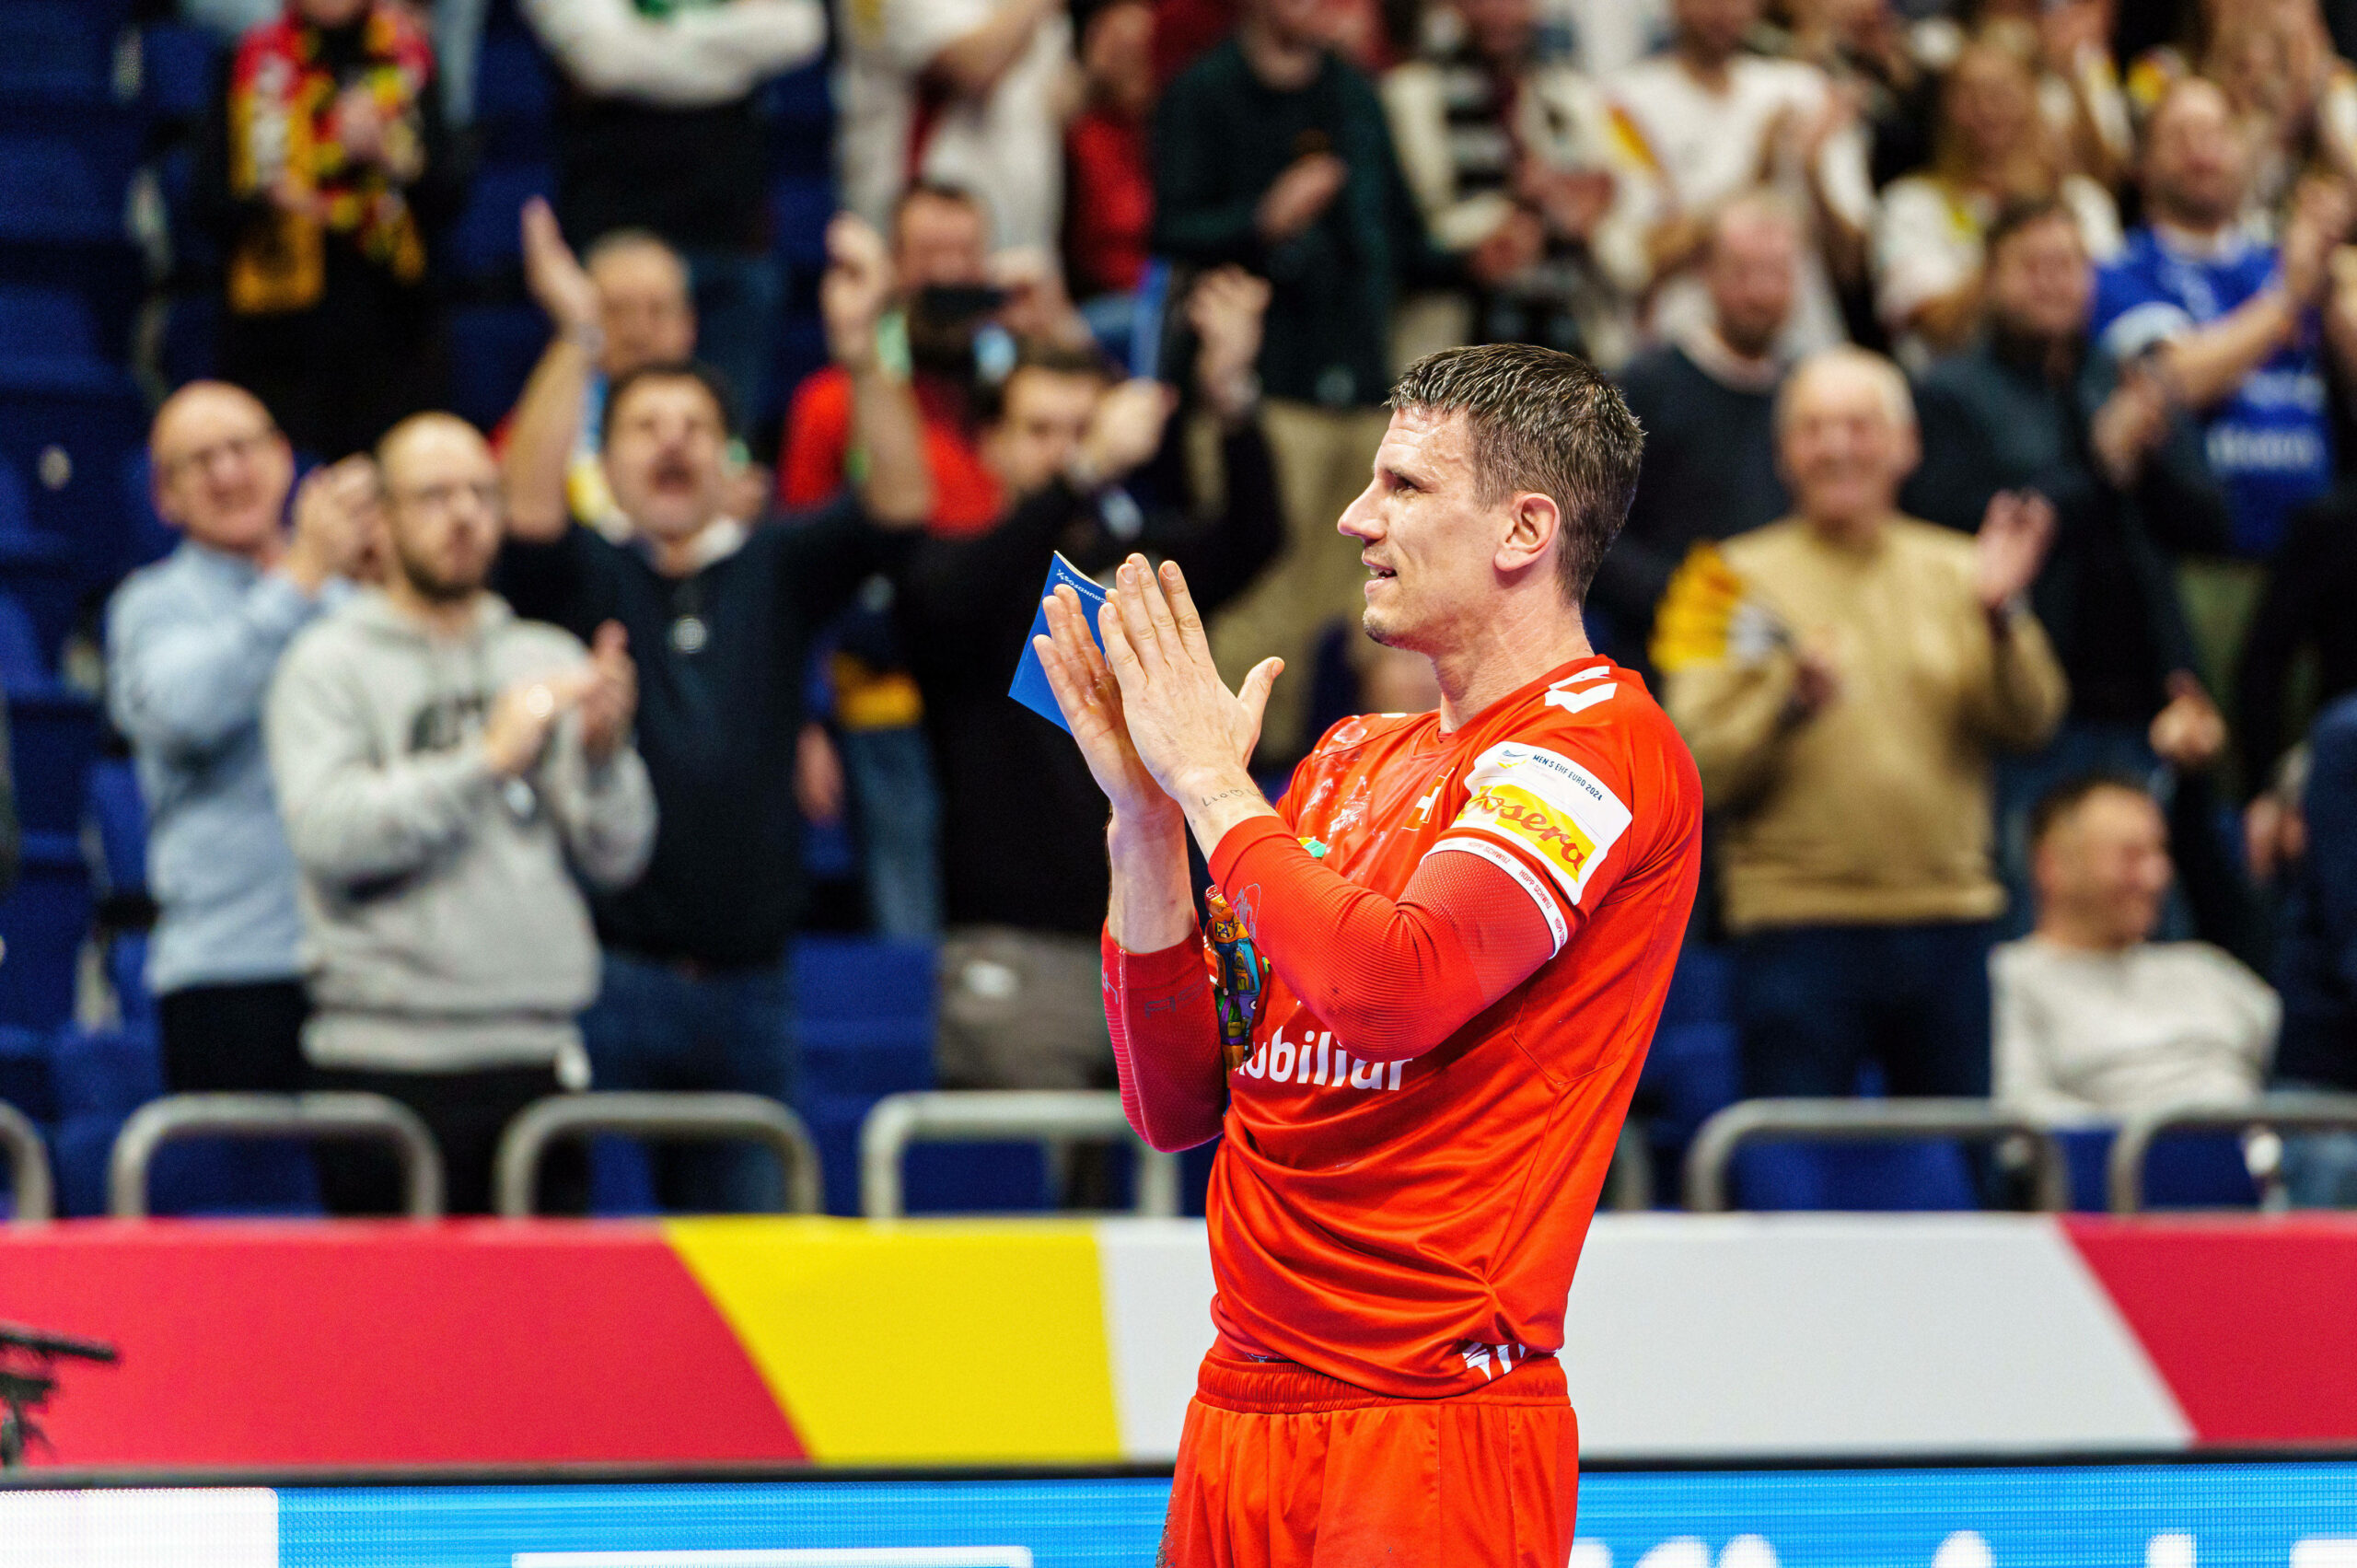 Andy Schmid bedankt sich nach seinem letzten Spiel auf der großen Handball-Bühne bei den Zuschauern.